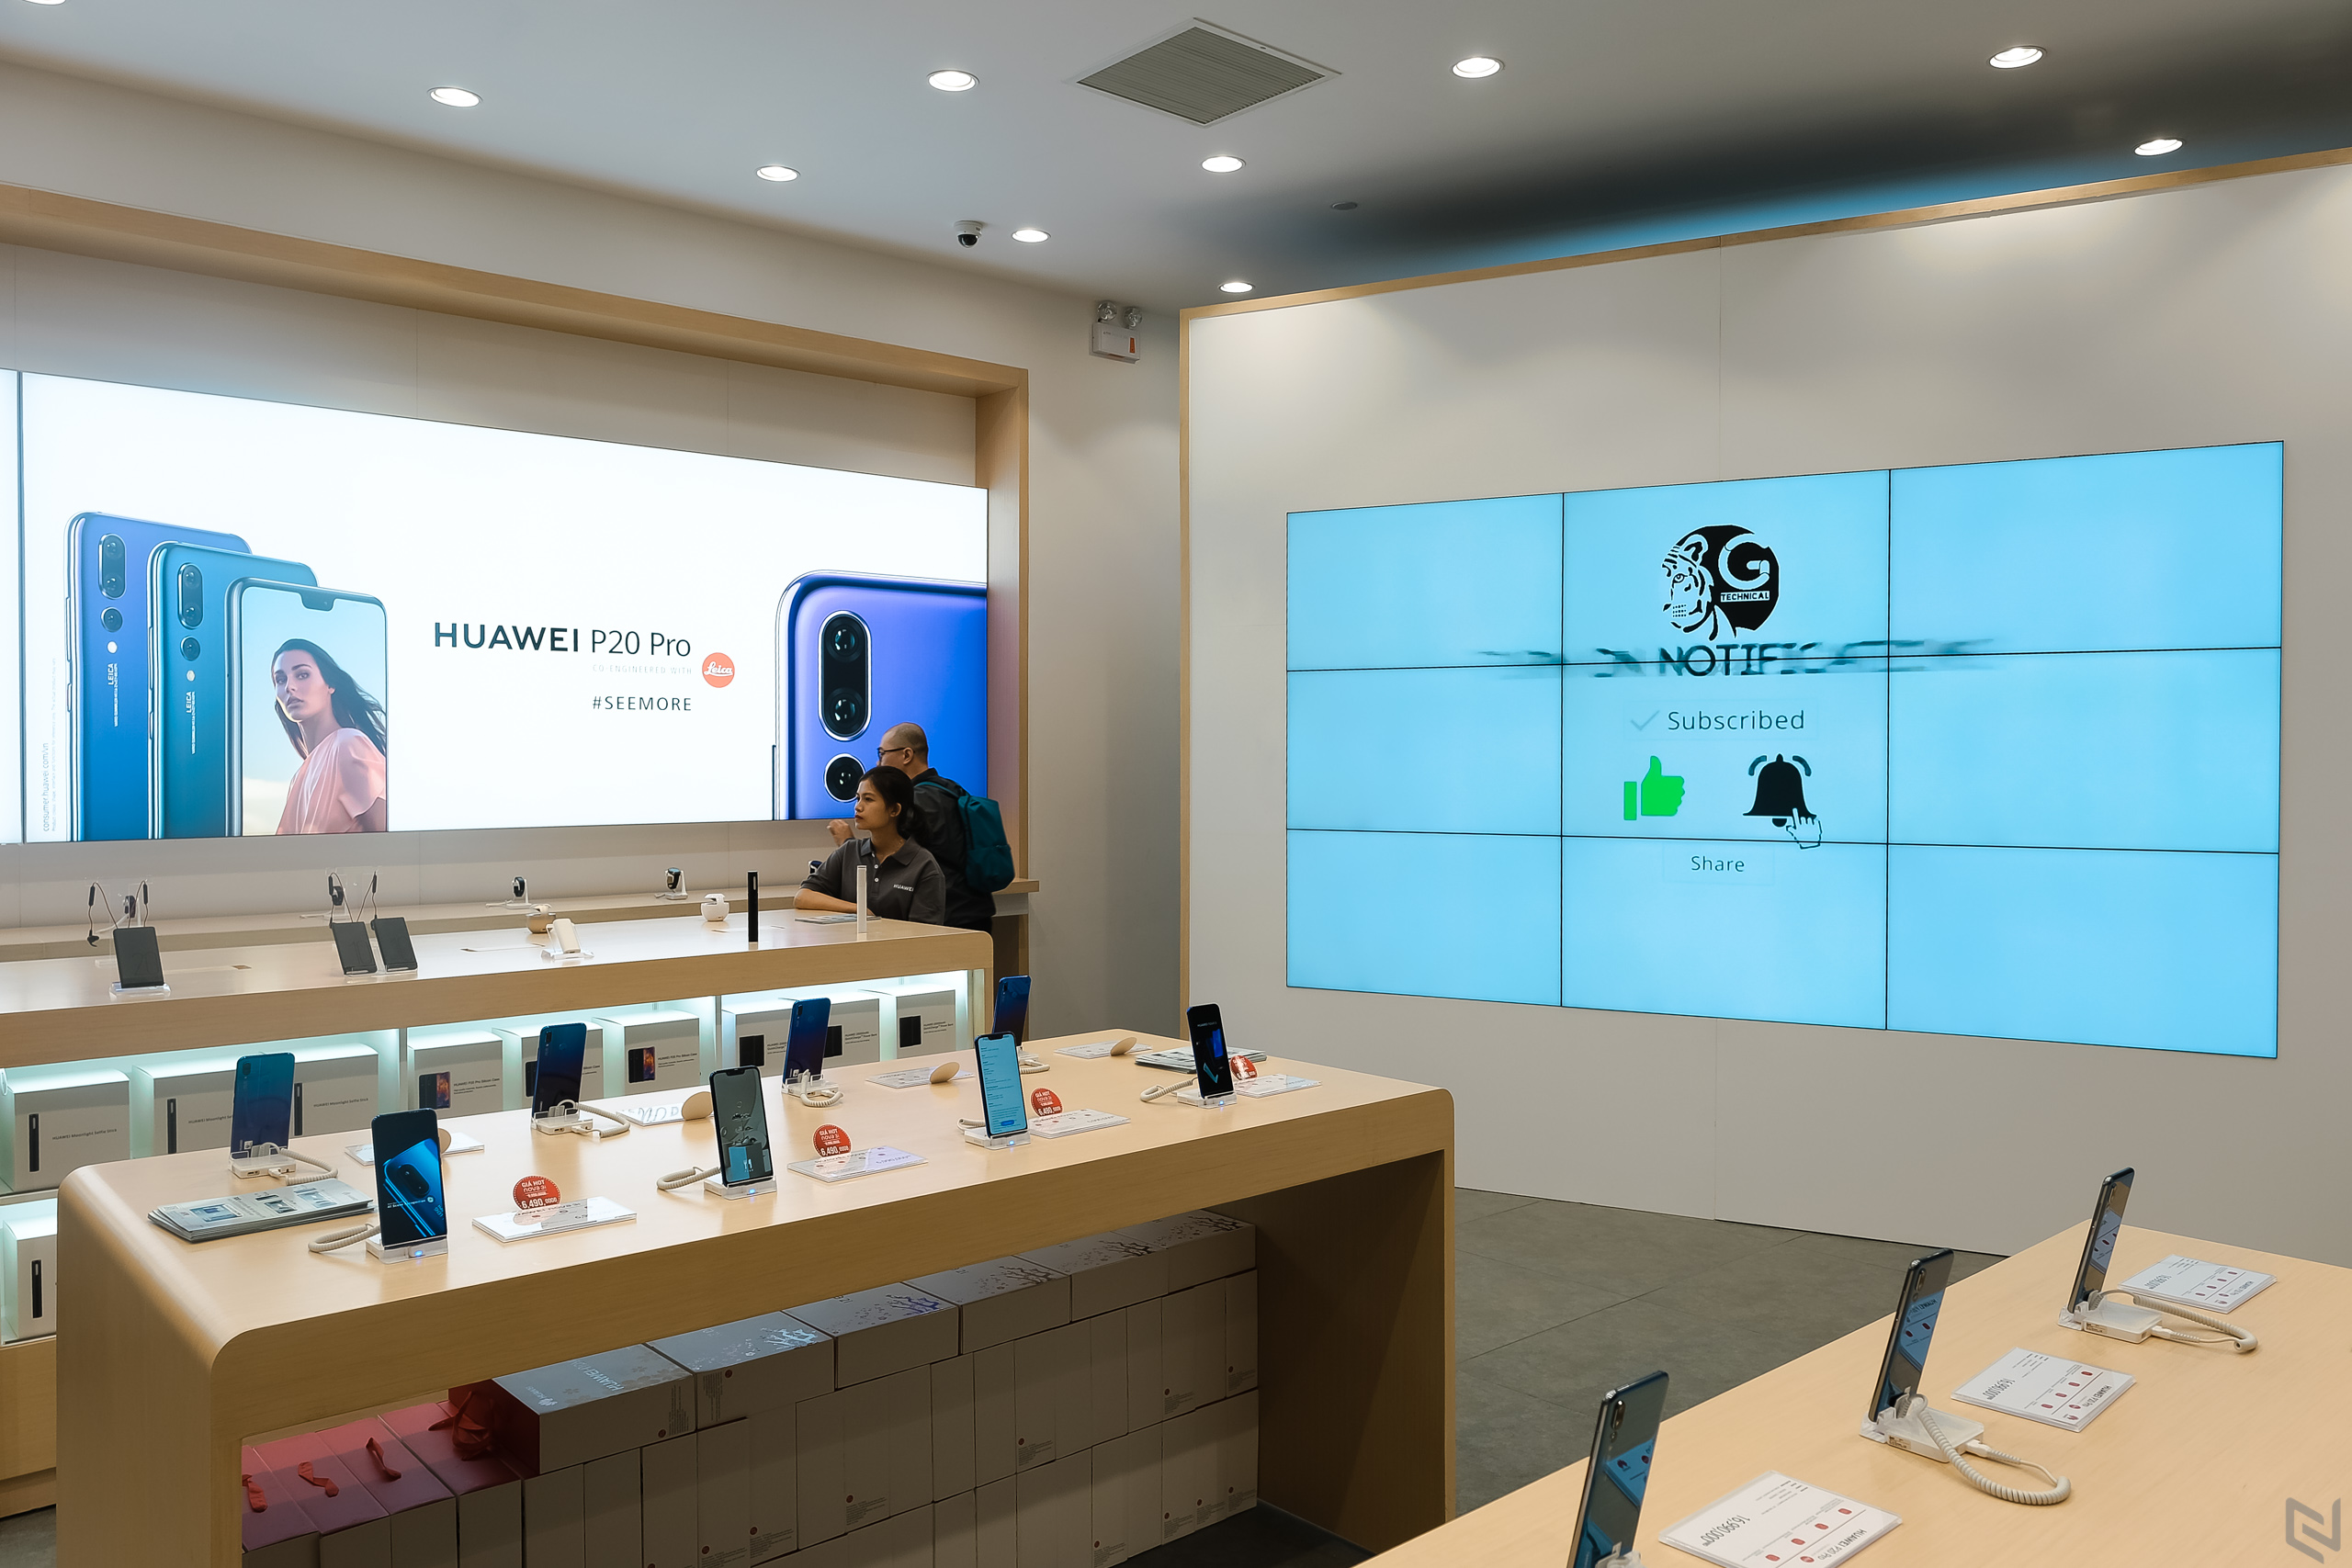 Huawei khai trương cửa hàng trải nghiệm hiện đại nhất Đông Nam Á tại Việt Nam